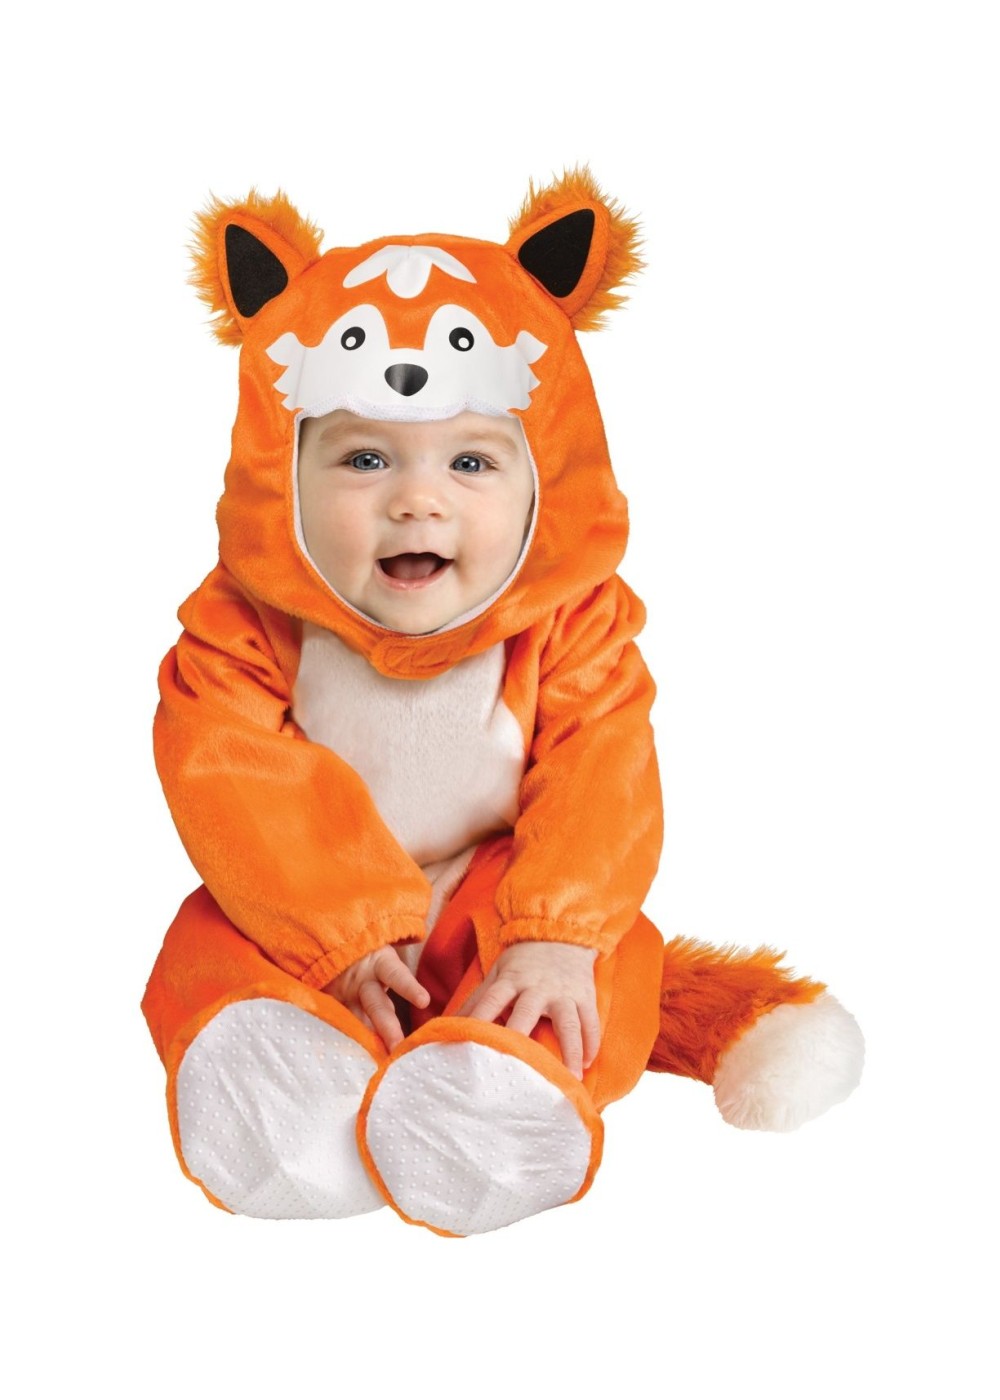  Baby Box Orange Fox Costume